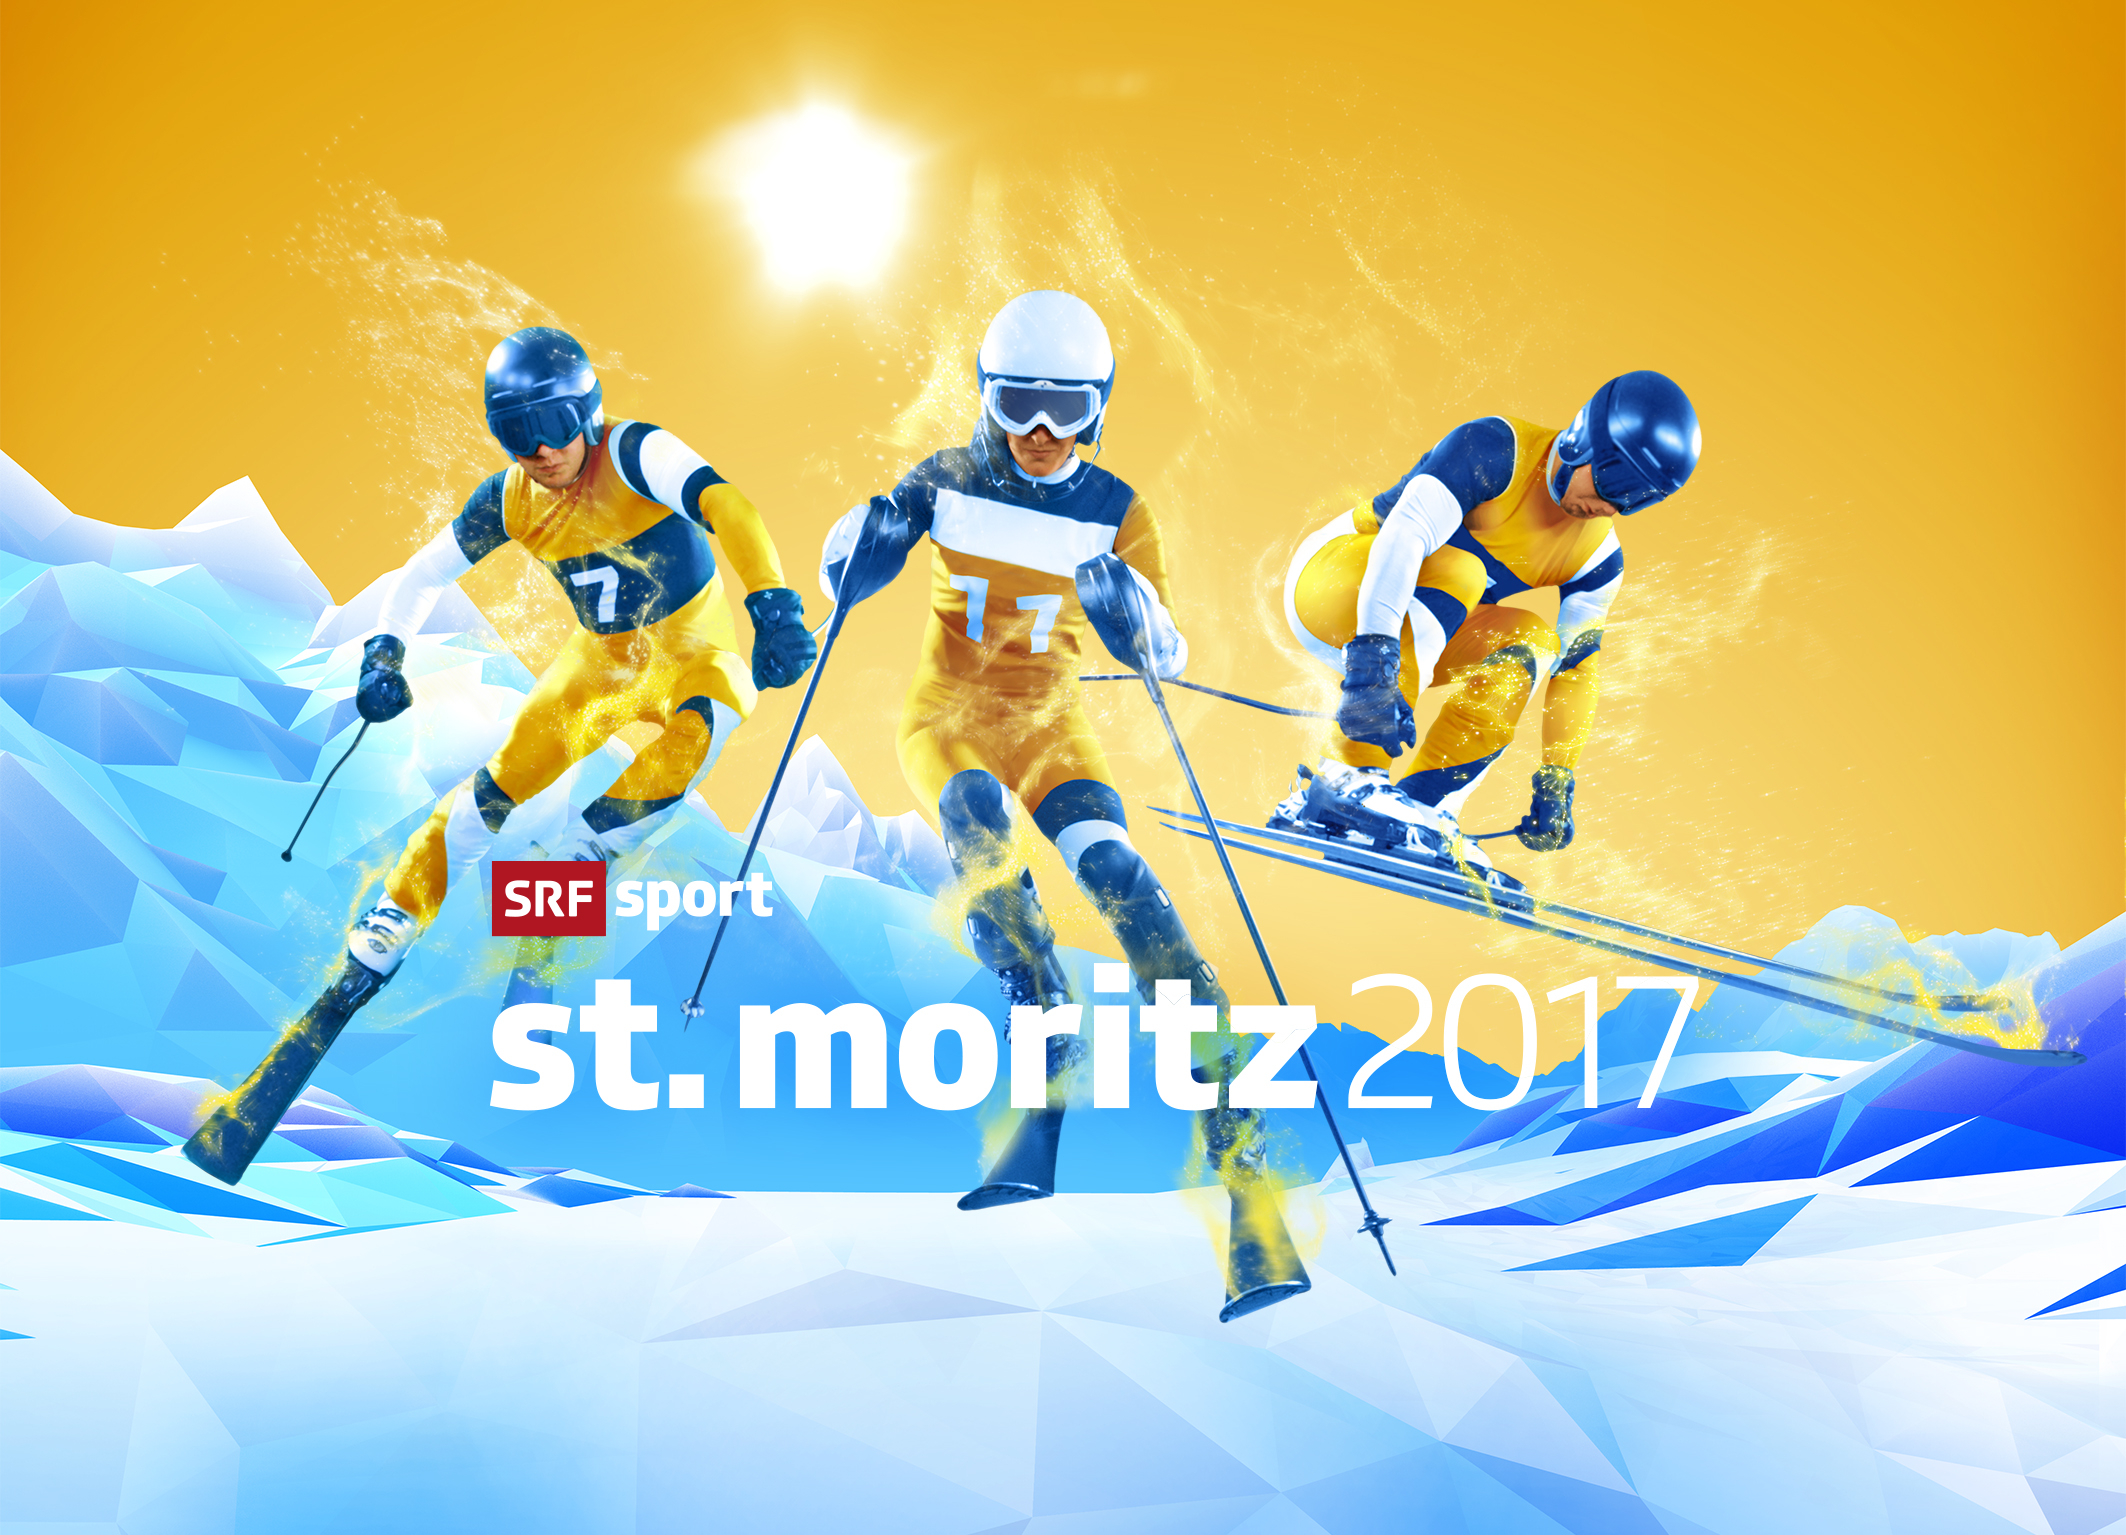 SRF berichtet auf allen Kanälen live über die «Ski WM St